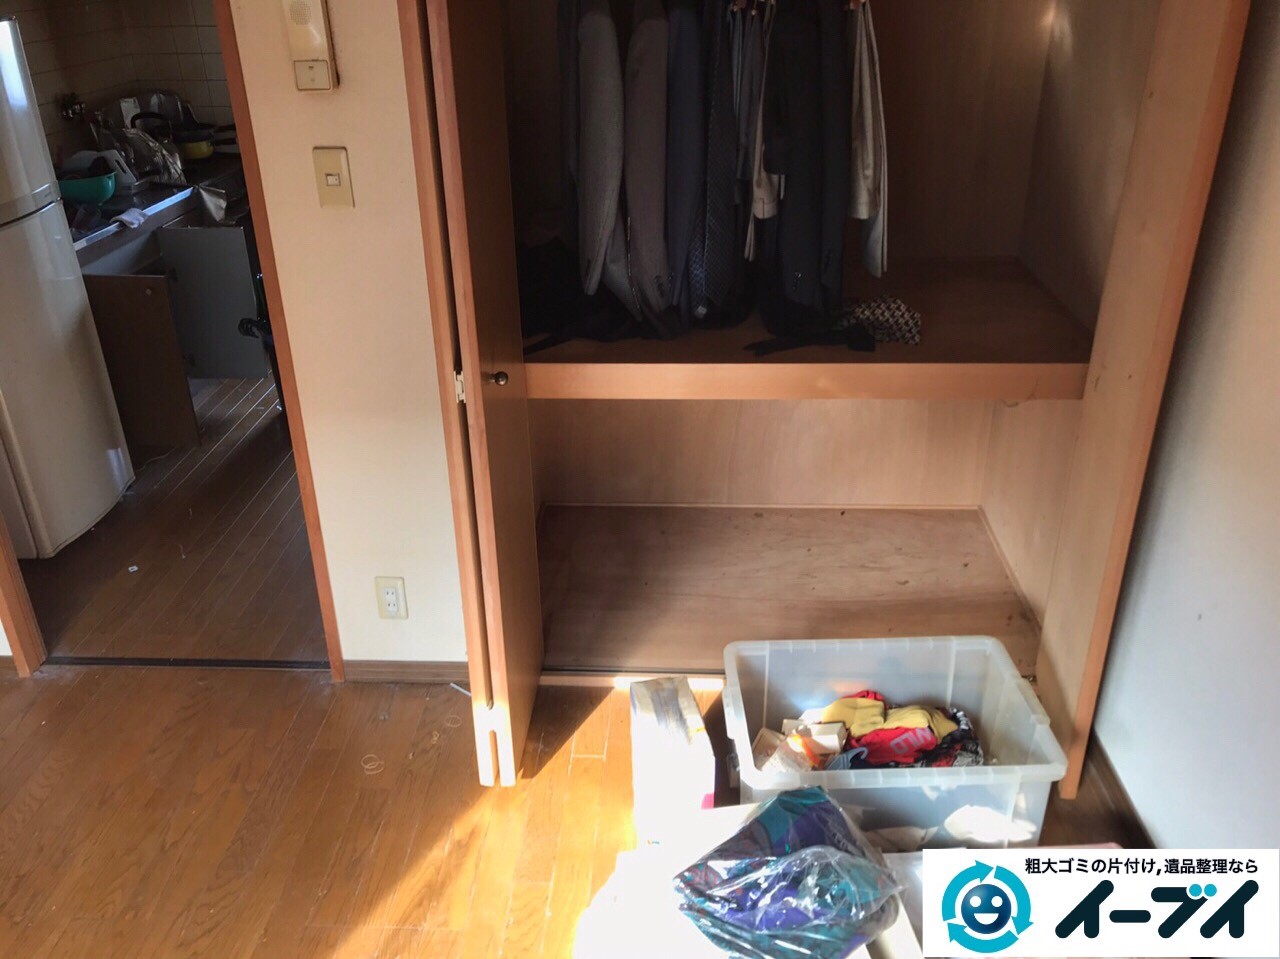 2017年1月30日大阪府大阪市城東区で遺品整理の依頼を受け家具や生活用品の片付け処分をしました。写真6